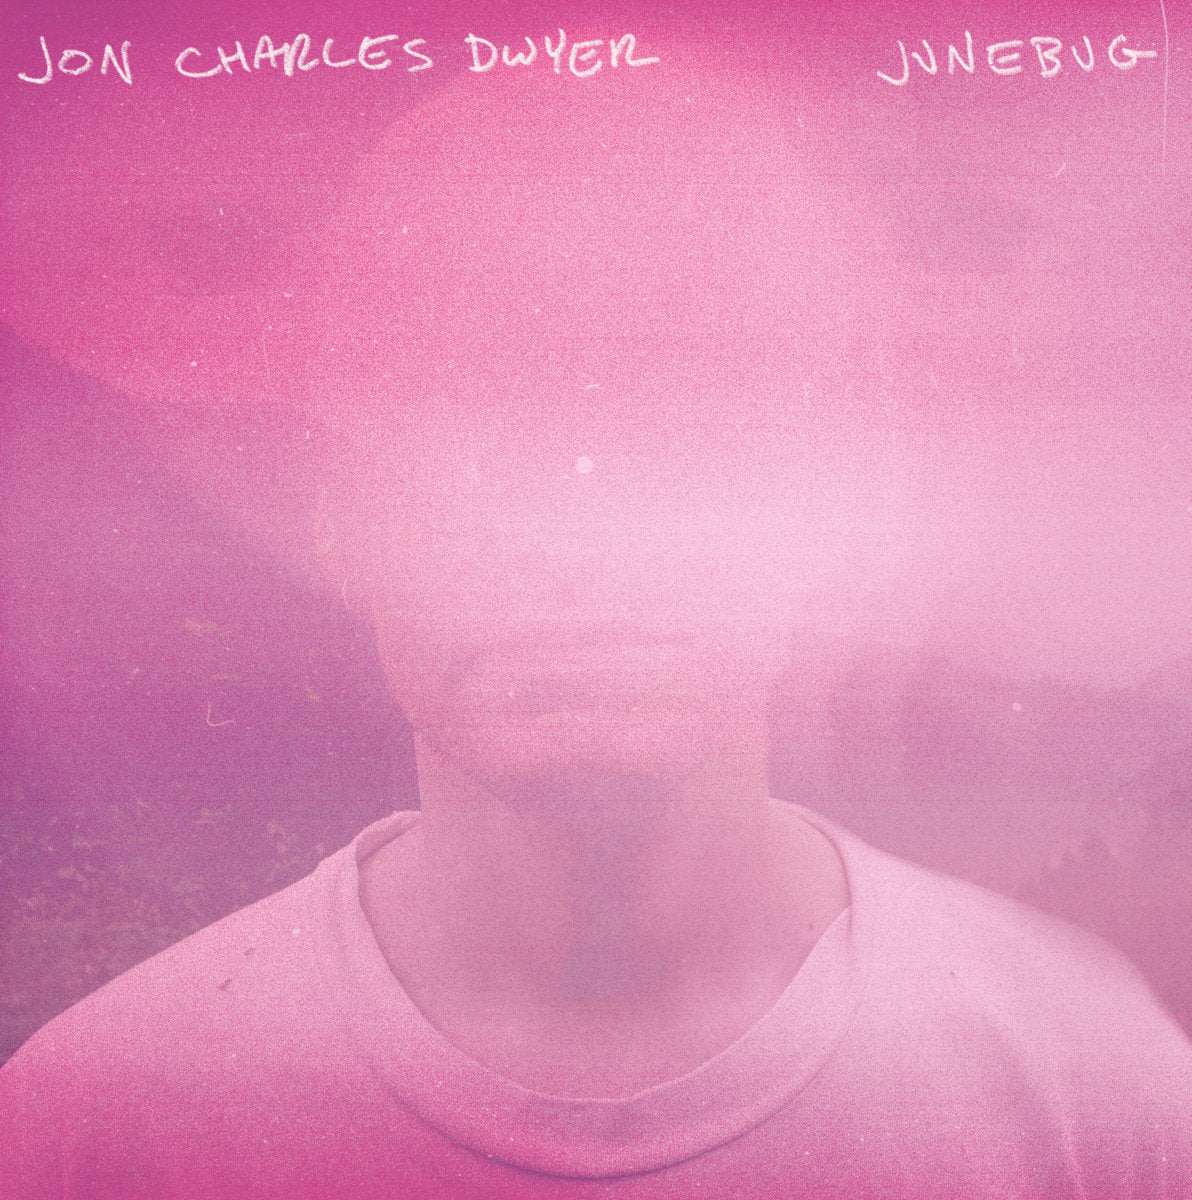 Jon Charles Dwyer "Junebug" 12" Vinyl